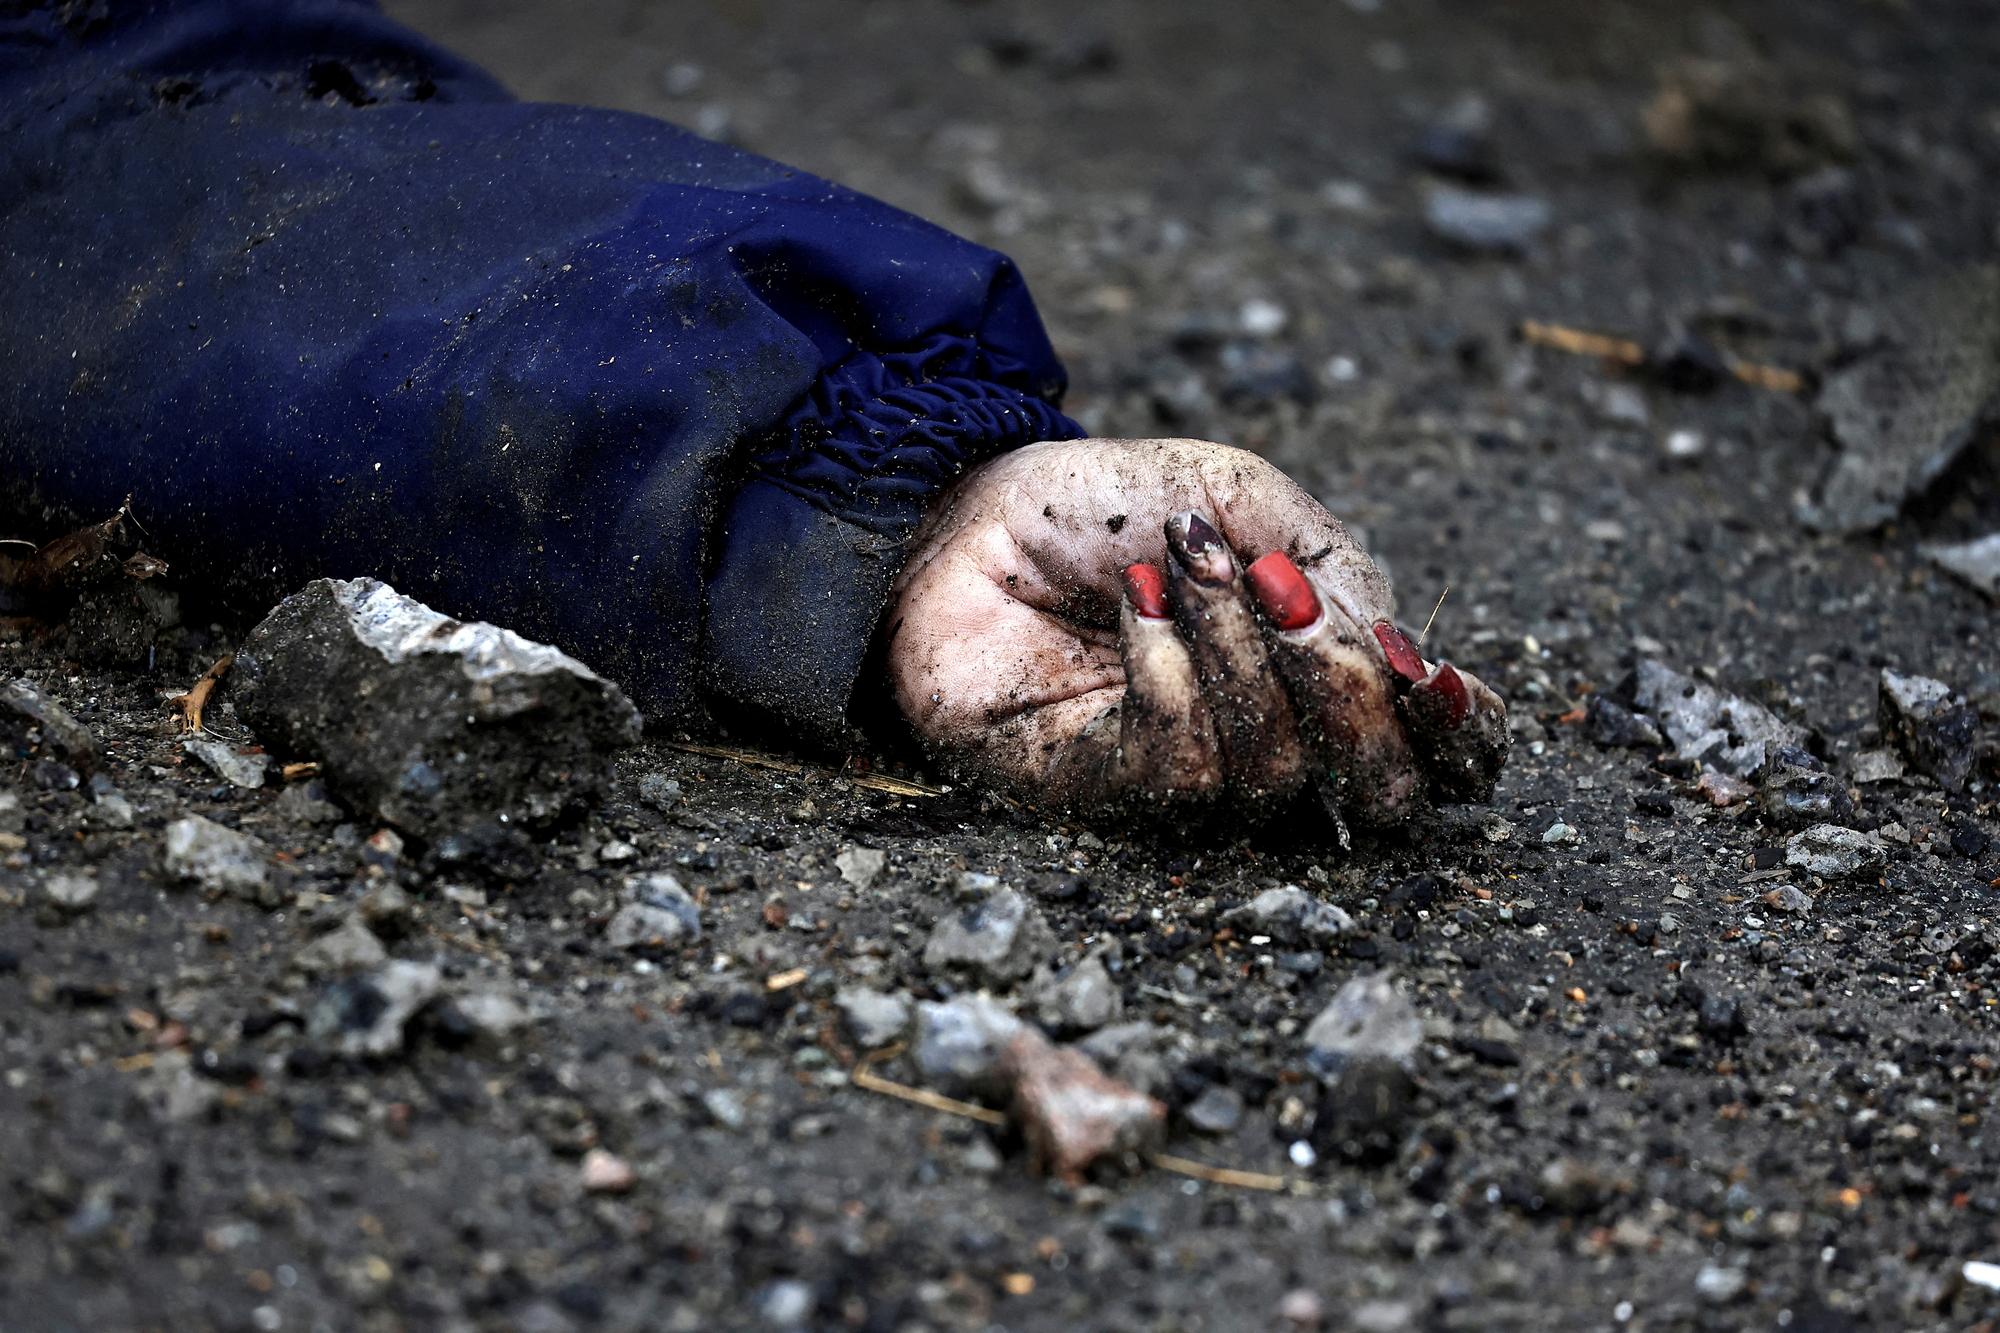 La main d'Iryna Filkina, civile abattue à vélo et laissée dans la rue par les soldats russes à Boutcha. [Reuters - Zohra Bensemra]